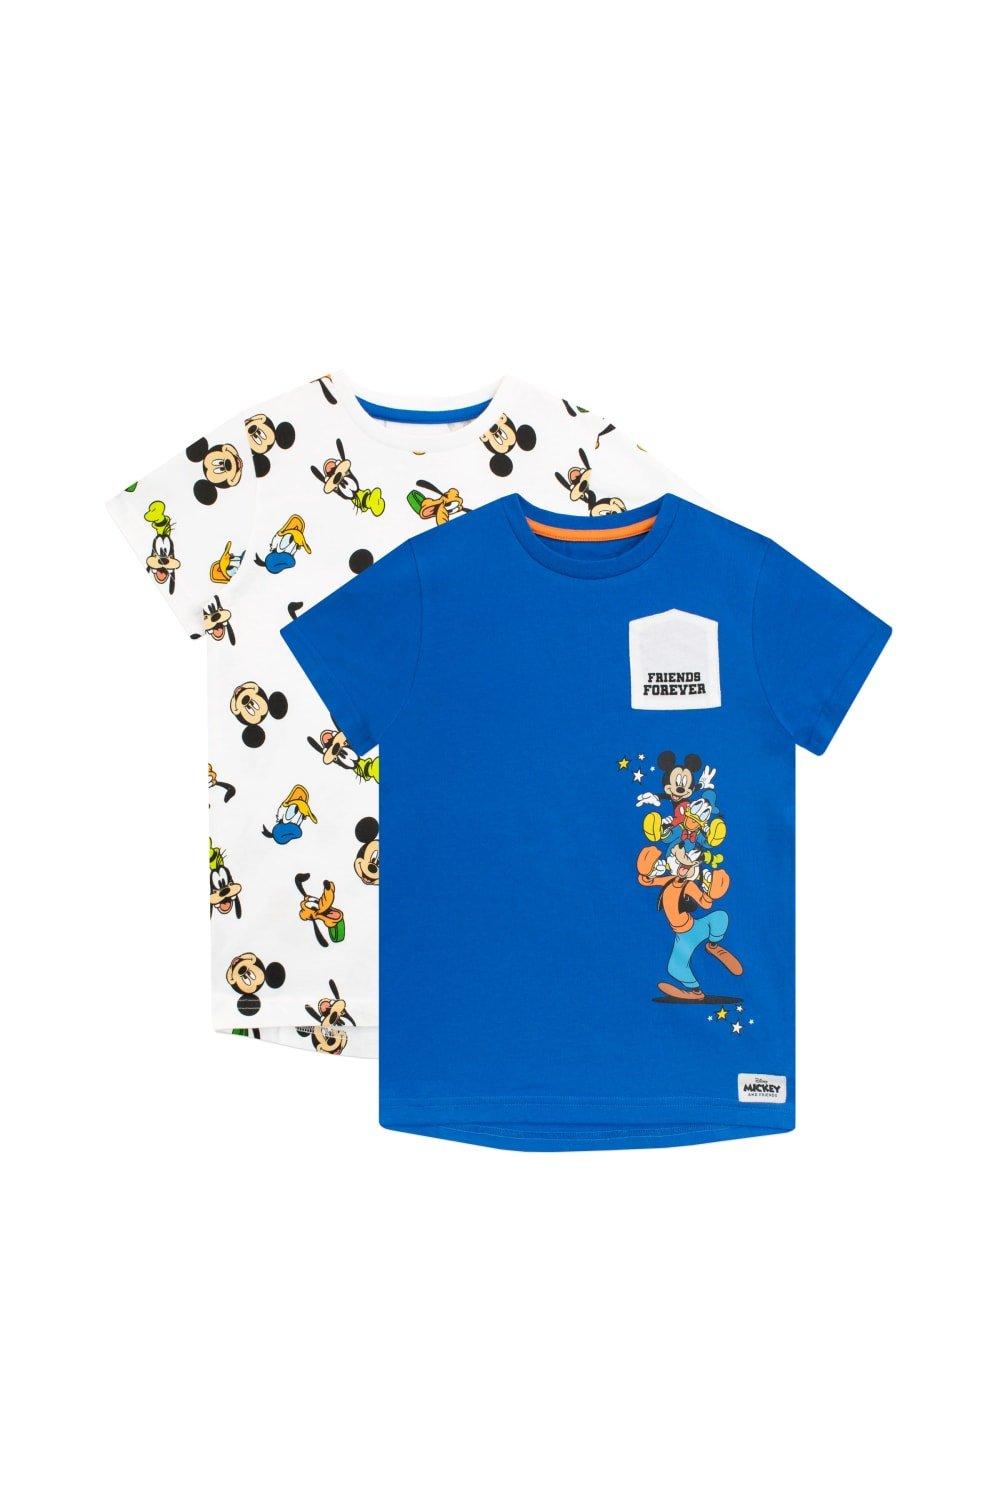 Набор футболок «Микки Маус и друзья», 2 шт. Disney, синий футболка с микки маусом и граффити для мальчиков disney белый